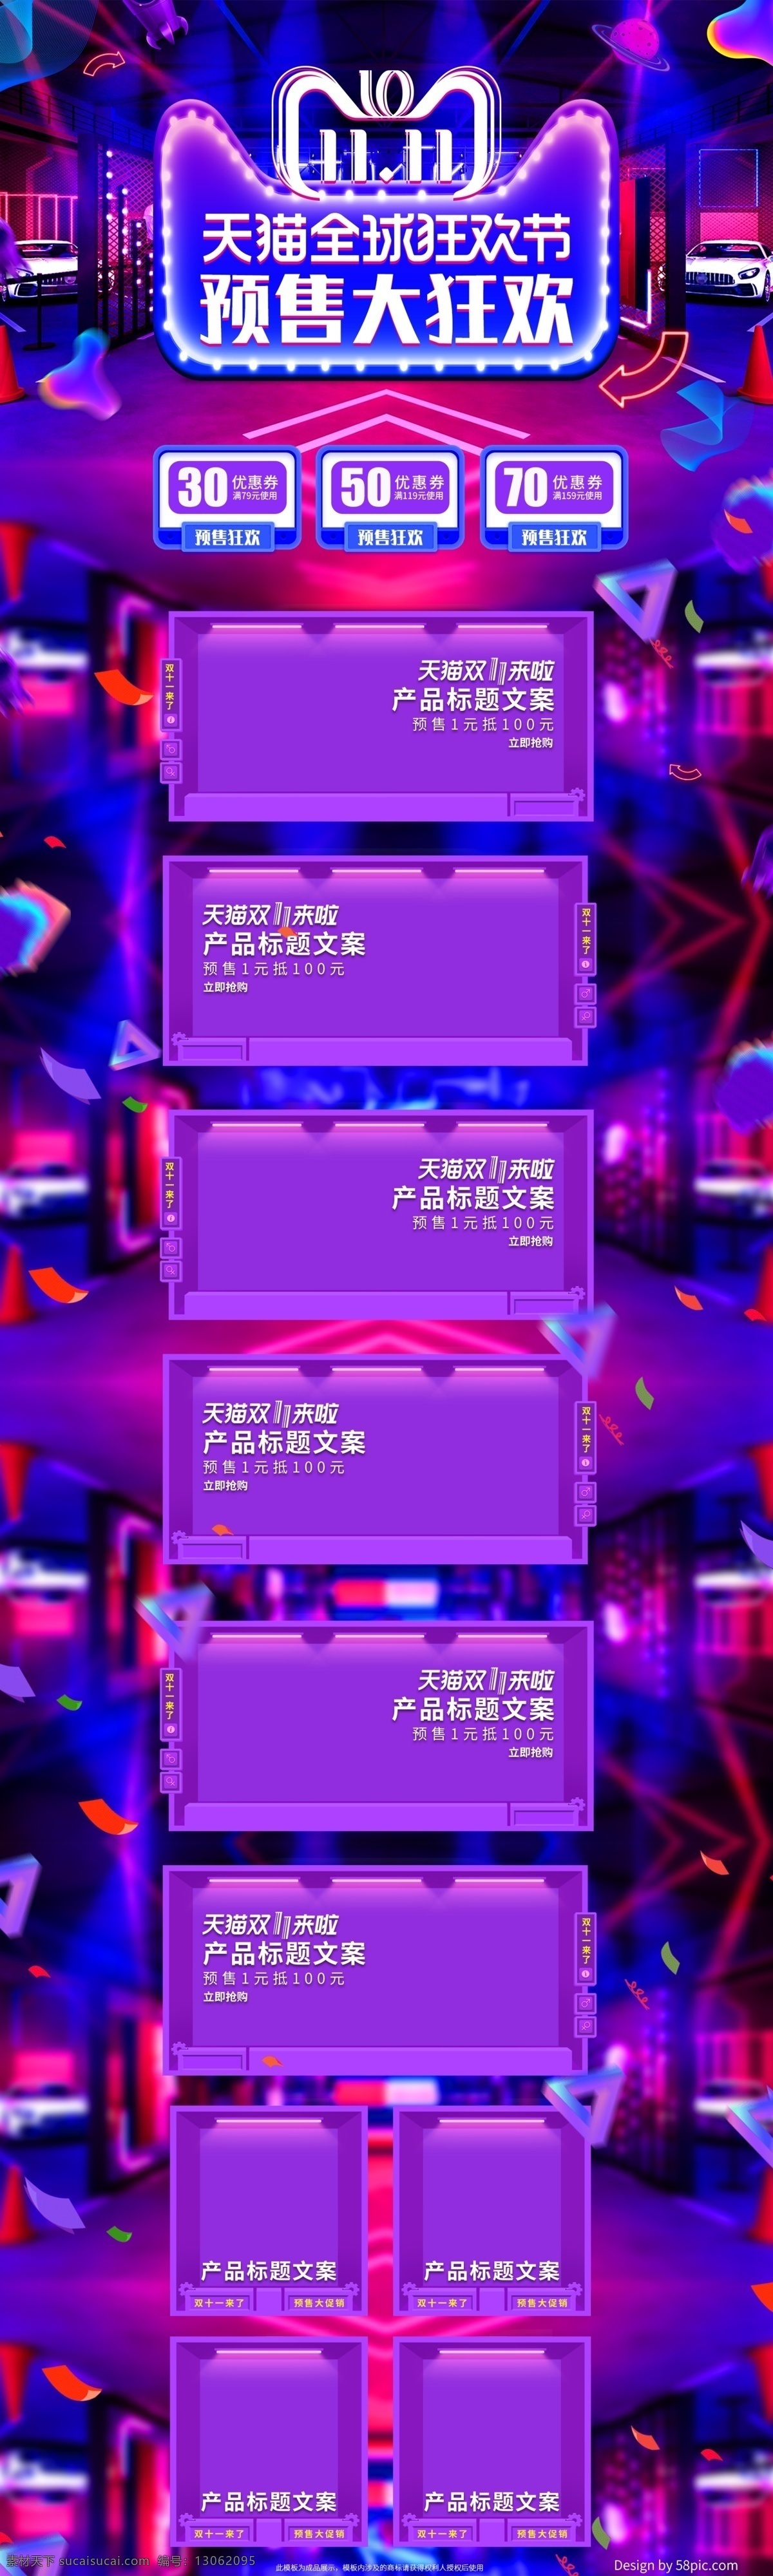 紫色 欧普 炫 酷 双十 预售 潮流时尚 电商 首页 促销 双十一 双11 炫酷 欧普风 狂欢